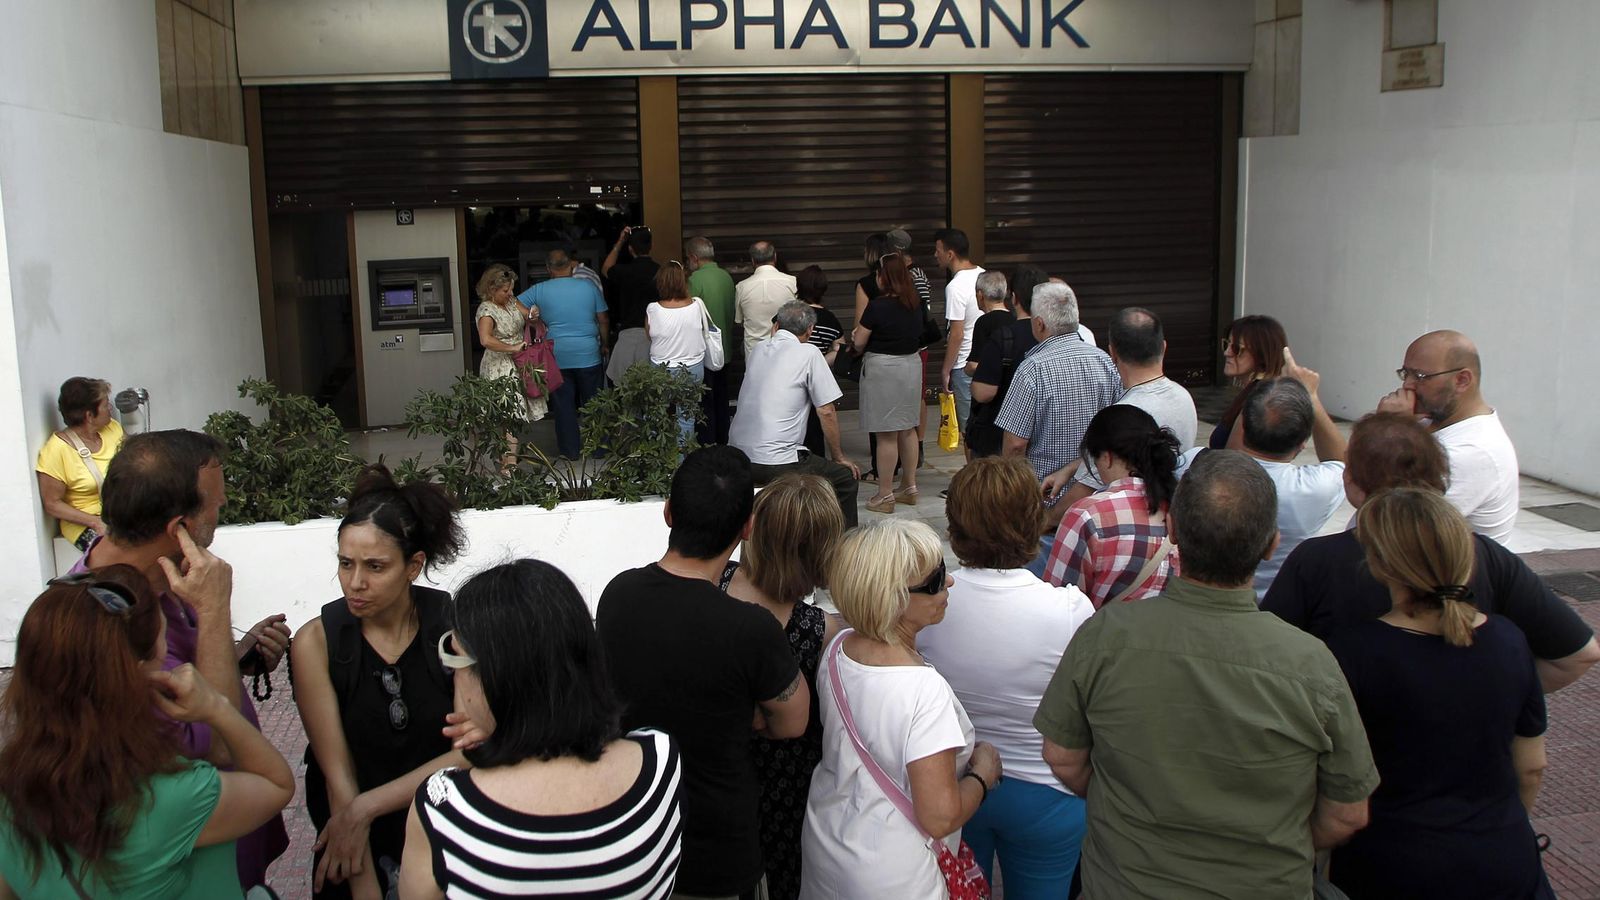 Foto: Ciudadanos griegos hacen cola a la puerta de un banco (Reuters)